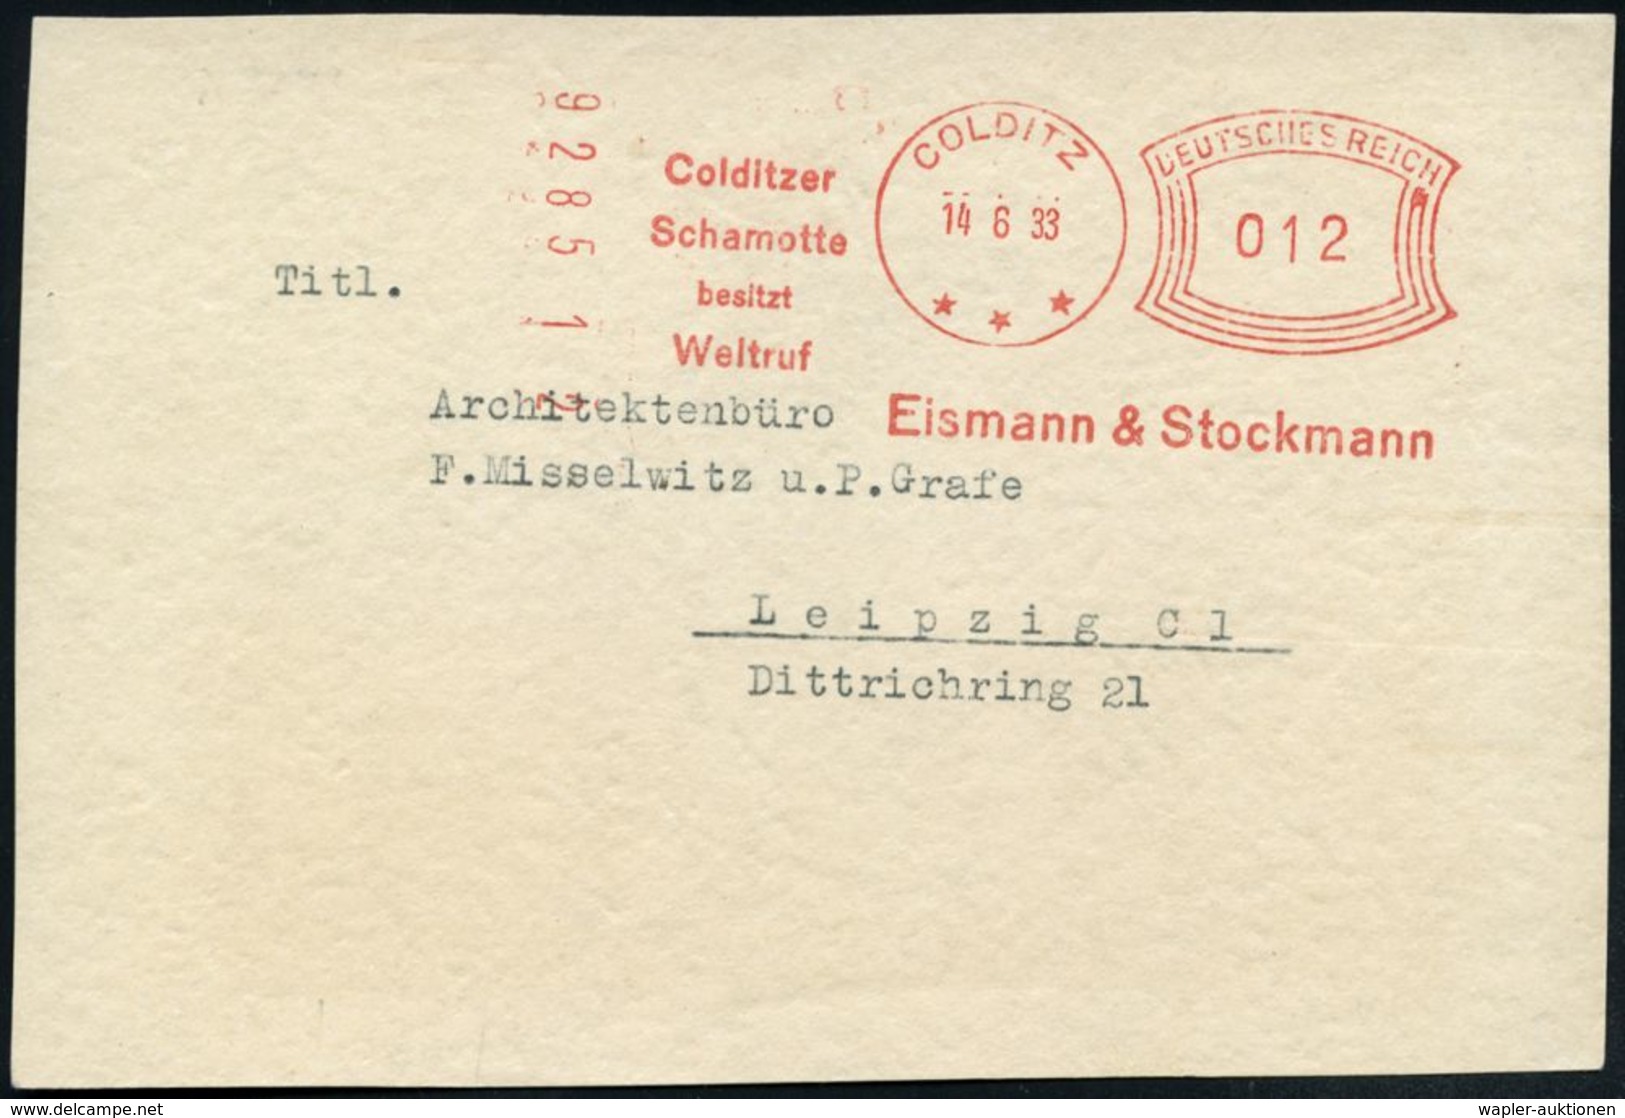 COLDITZ/ ***/ Colditzer/ Schamotte/ Besitzt/ Weltruf/ Eismann & Stockmann 1933 (14.6.) Seltener AFS-Typ "Komusina" Klar  - Porcelana